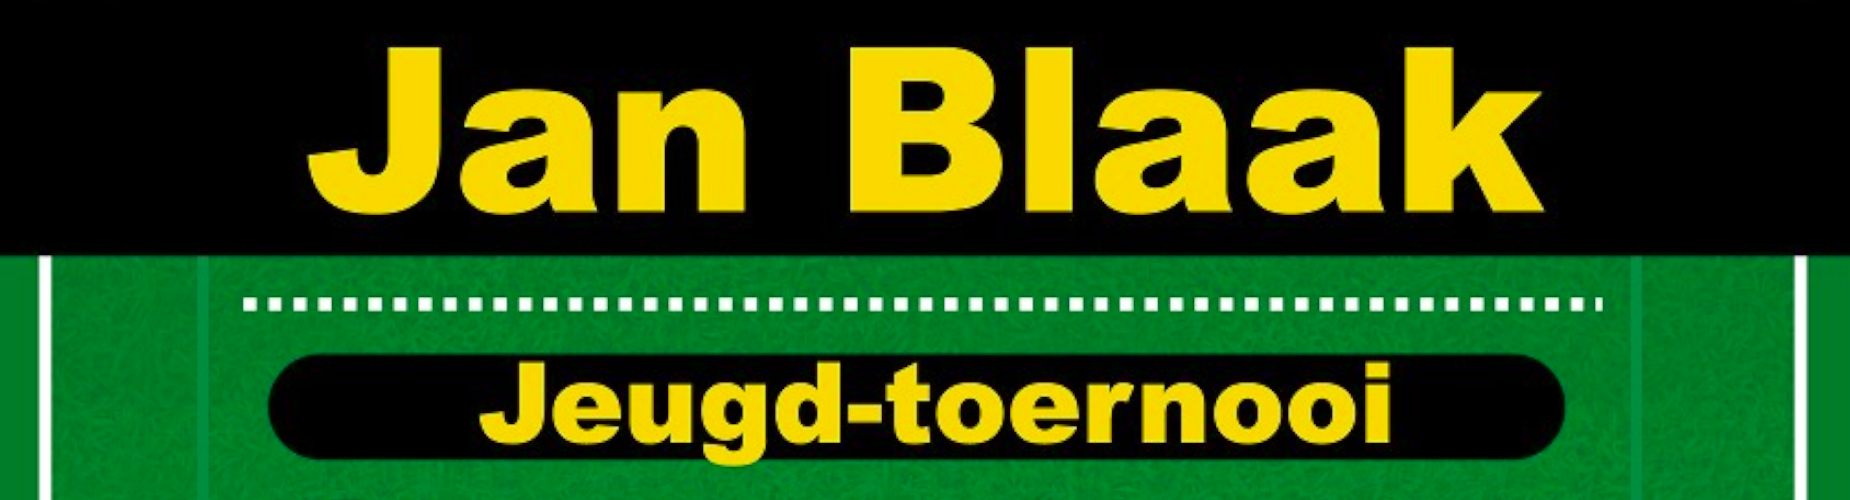 Banner - Jan Blaak Jeugdtoernooi - VVAC - Ottoland